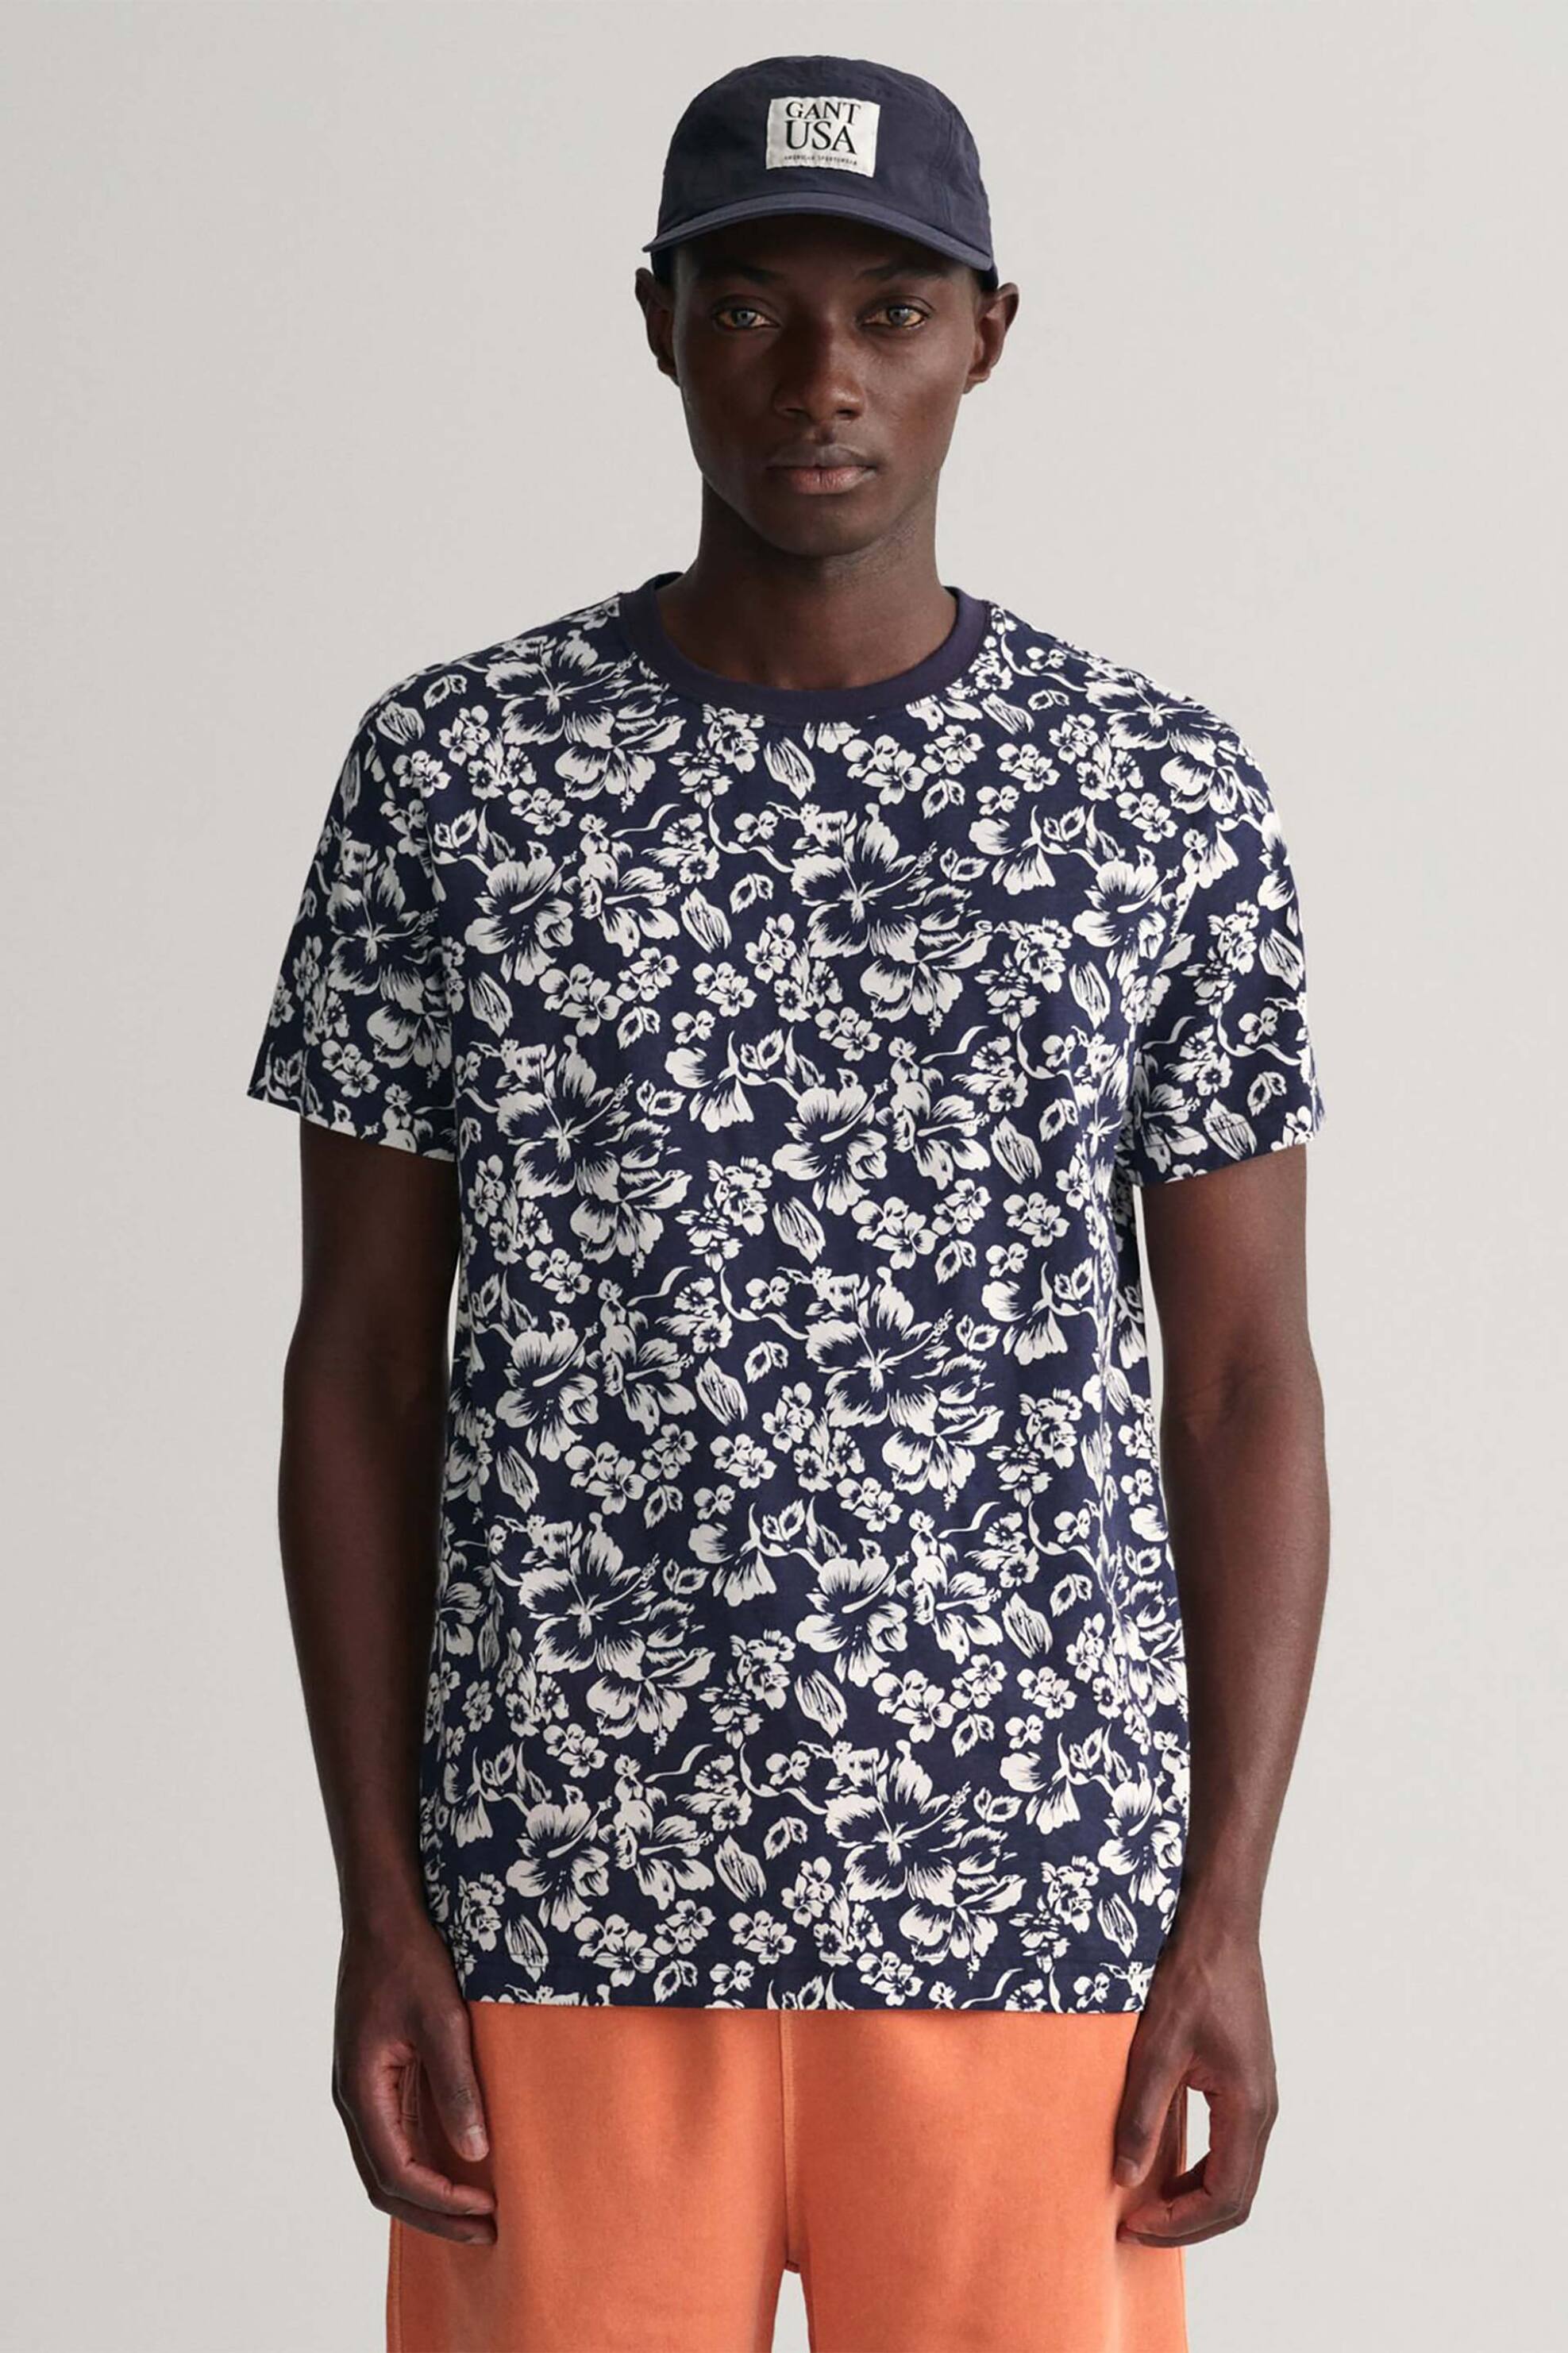 Ανδρική Μόδα > Ανδρικά Ρούχα > Ανδρικές Μπλούζες > Ανδρικά T-Shirts Gant ανδρικό T-shirt με floral print και στρογγυλή λαιμόκοψη - 2005108 Μπλε Σκούρο